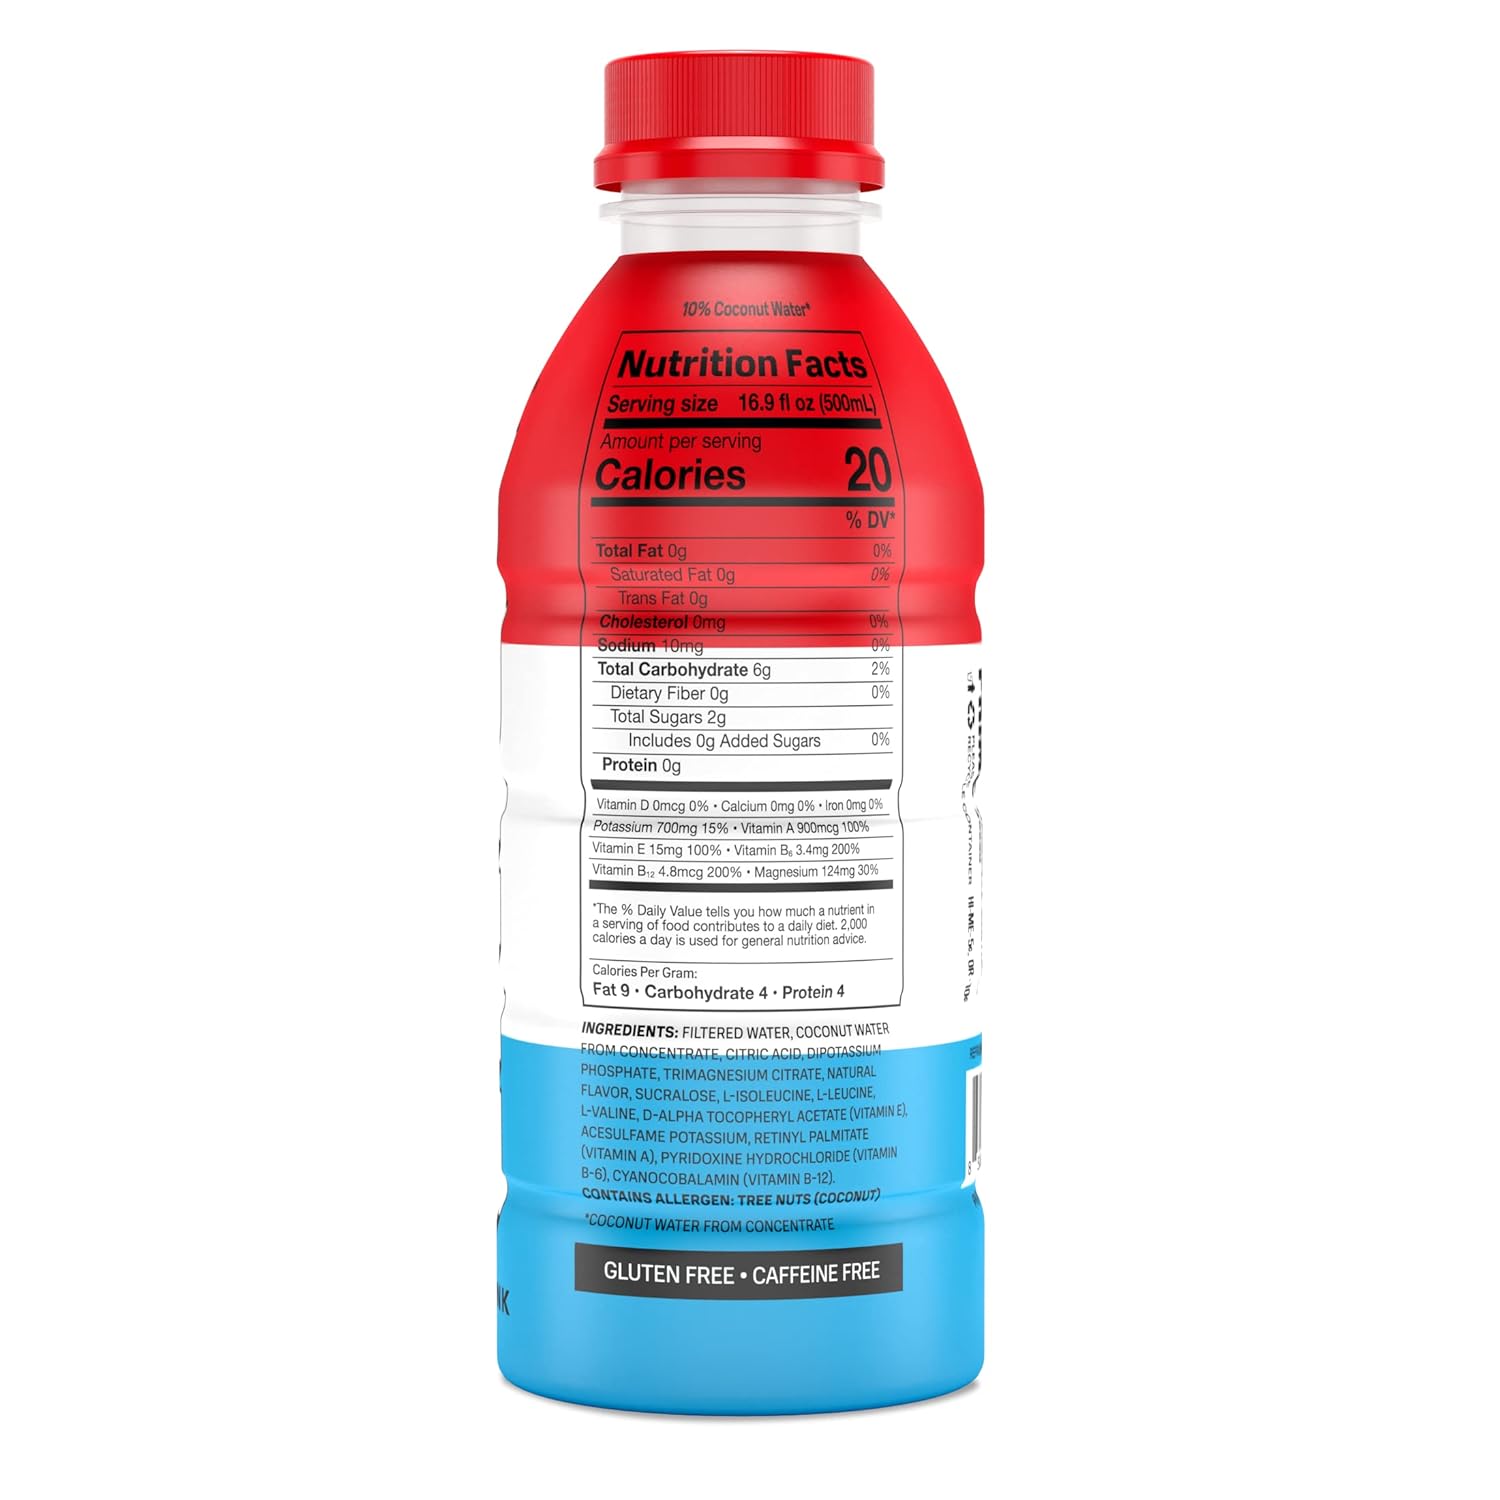 Prime Hydration Drink - Ice Pop 500ml- Sportdrink von Logan Paul & KSI-Koffeinfrei